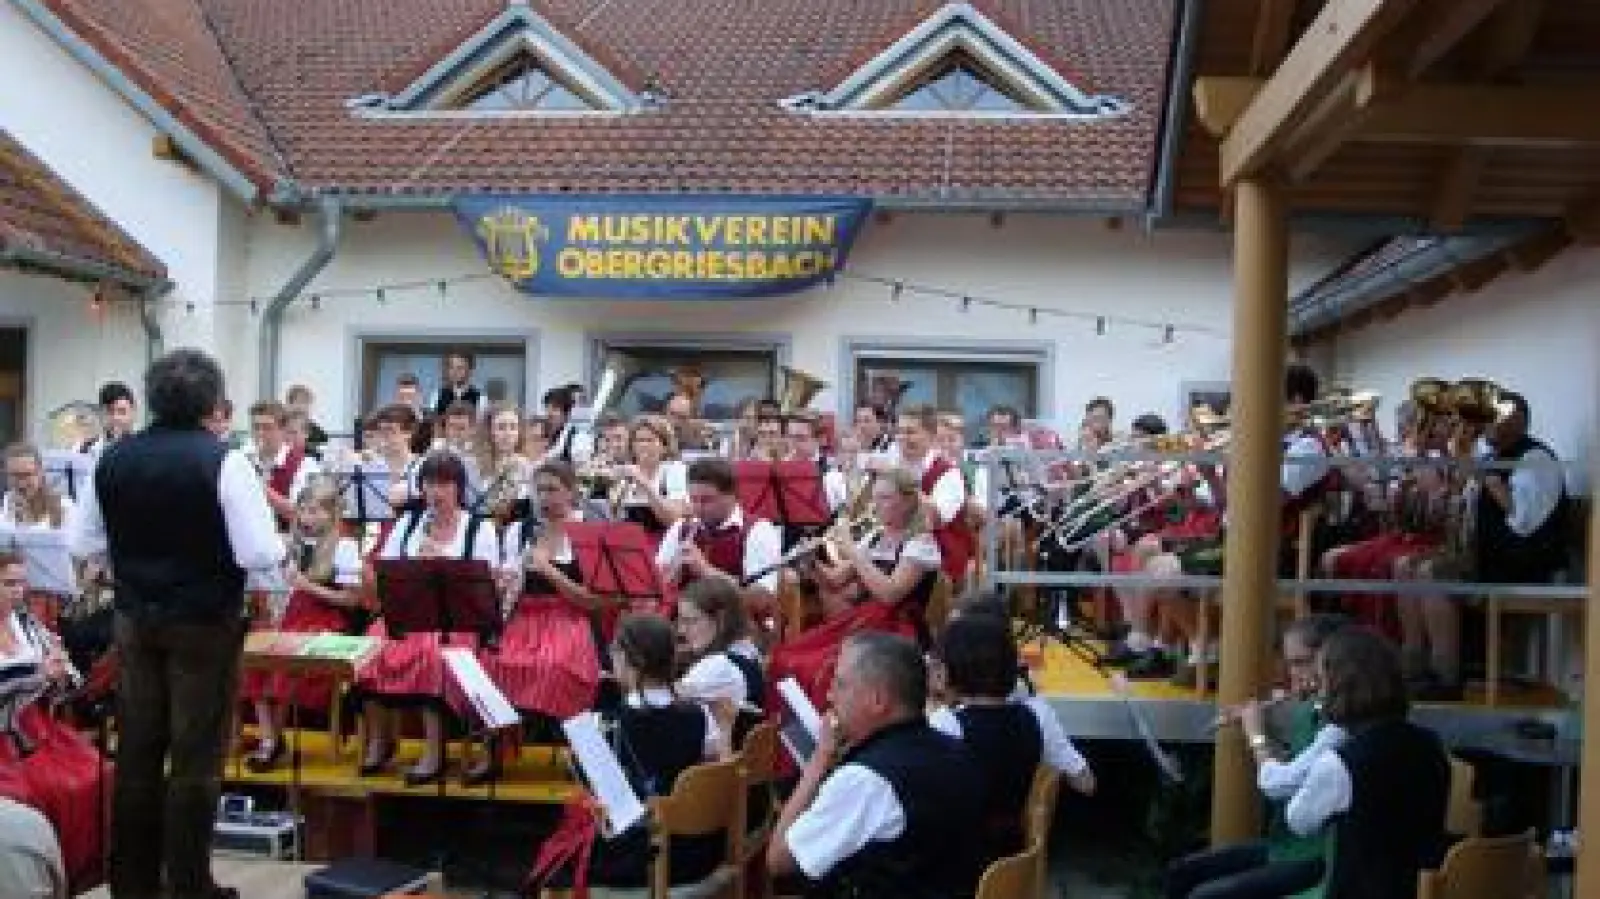 Dicht gedrängt   stand das Gesamtorchester mit Musikern aus Obergriesbach, Kühbach und Altomünster beim Brunnenhofkonzert in Obergriesbach. 	Foto: Josef Mandl (Foto: Josef Mandl)